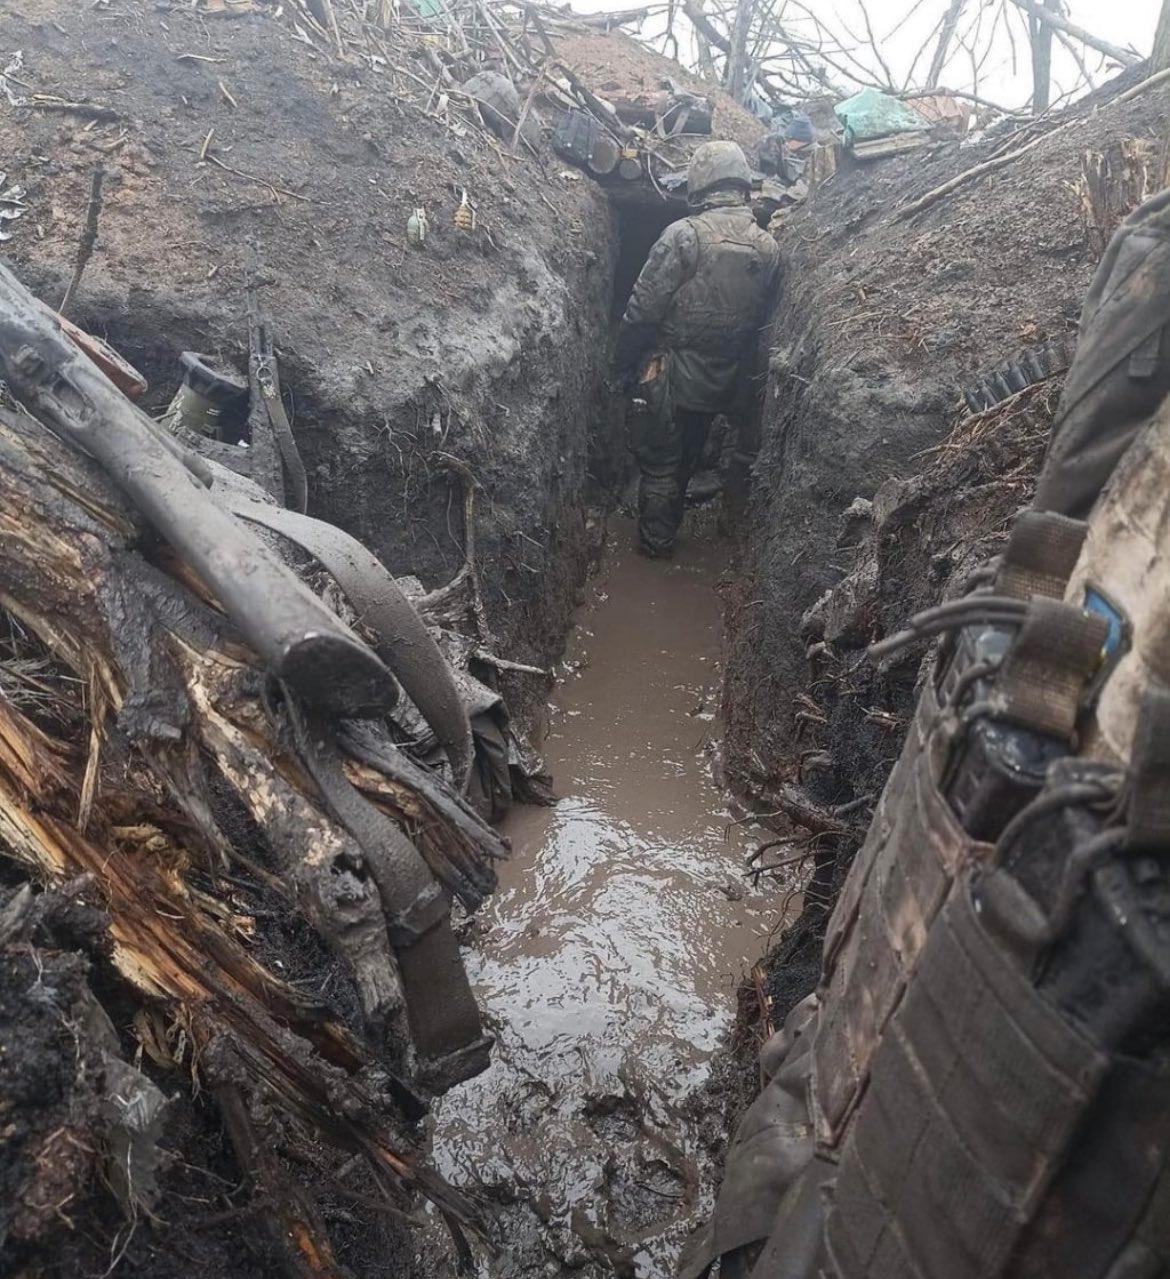 På bilder syns ukrainska soldater ta sig fram i leriga skyttegravar. 